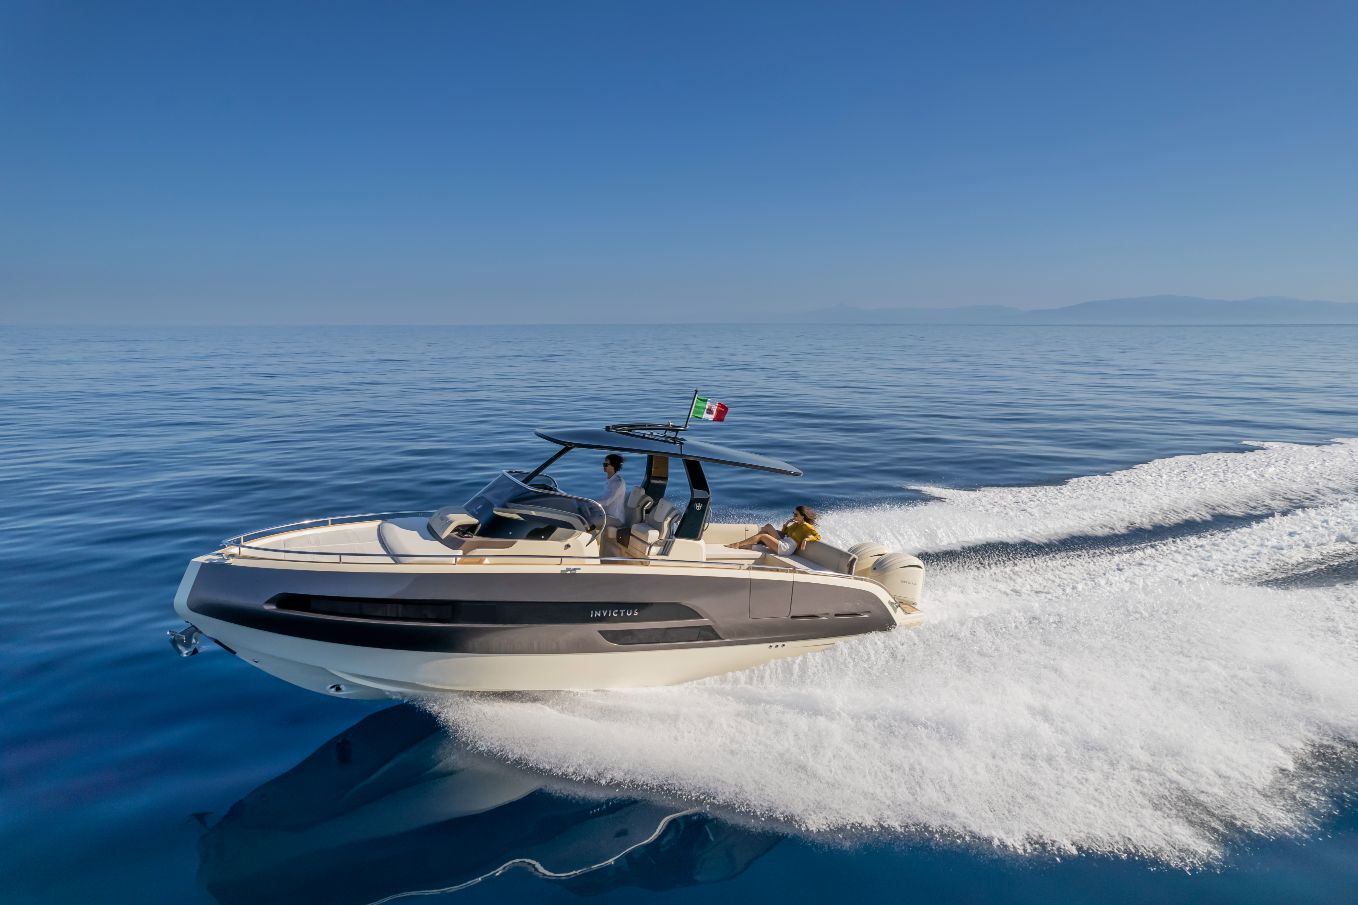 GT320S, il nuovo fuoribordo di Invictus Yacht pronto per il debutto mondiale, al Cannes Yachting Festival 2022